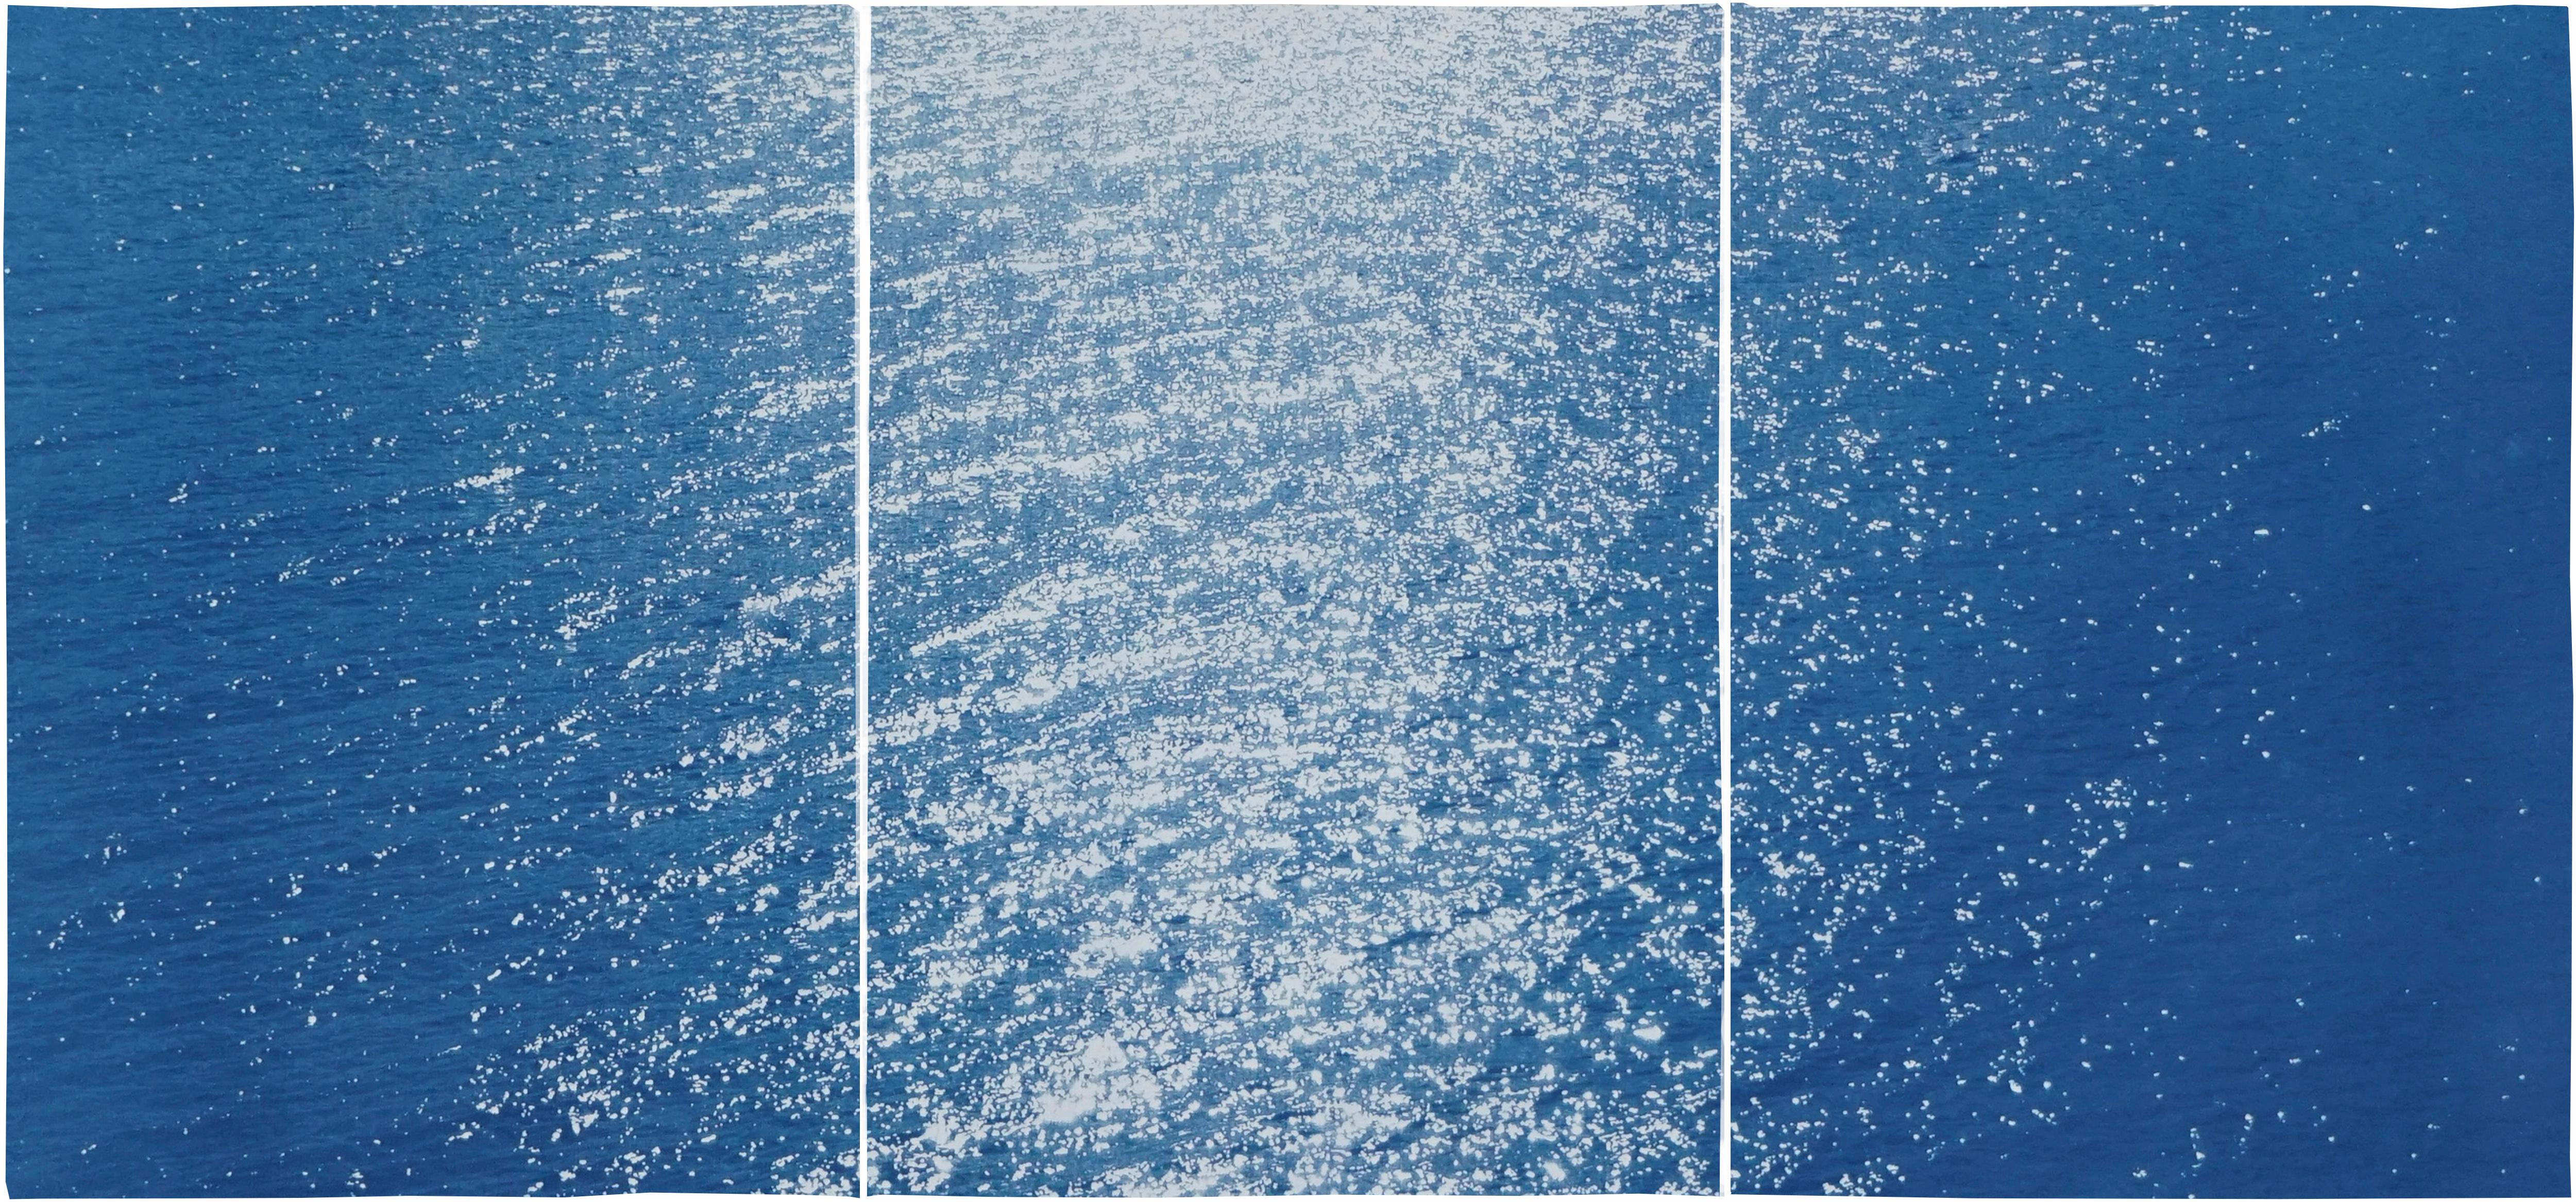 Amalfiküste Meereslandschaft, nautisches Triptychon, Cyanotypie auf Papier, Sonnenaufgang Bay, Blau